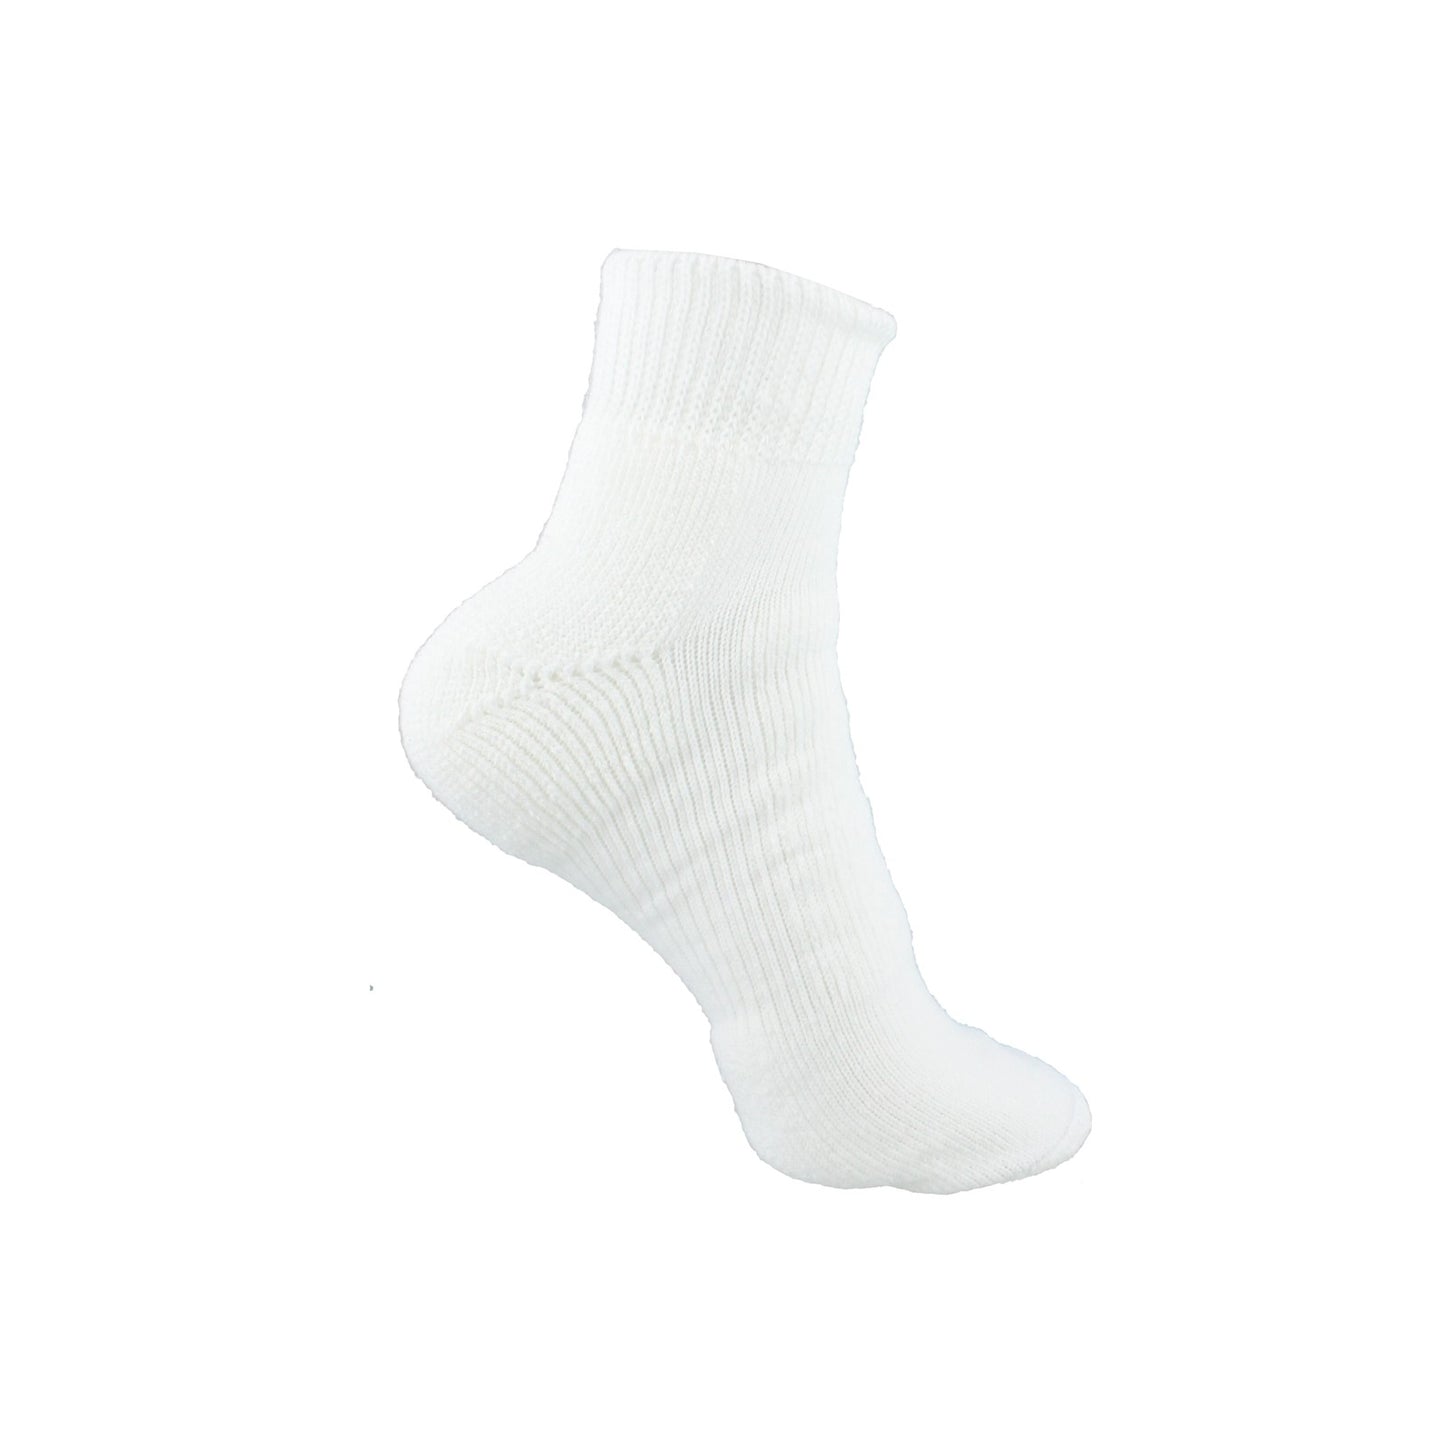 Peltz Shoes  Unisex Thorlo WMX Walking Socks - Large - 1 Pack White WMX-13 004